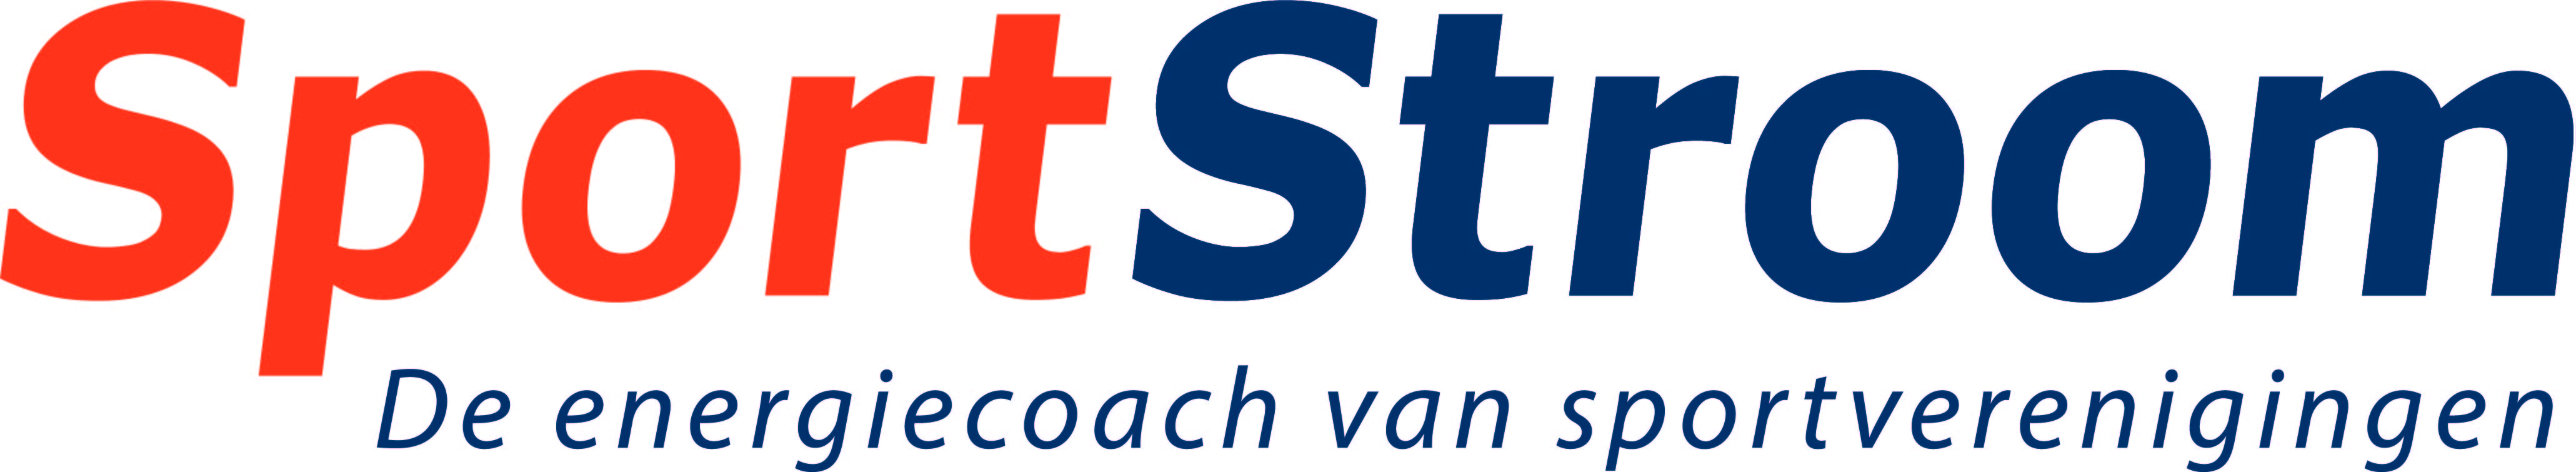 Logo van SportStroom. Sport staat in rode letters en Stroom in blauwe letters. Eronder staat De energiecoach van sportverenigingen